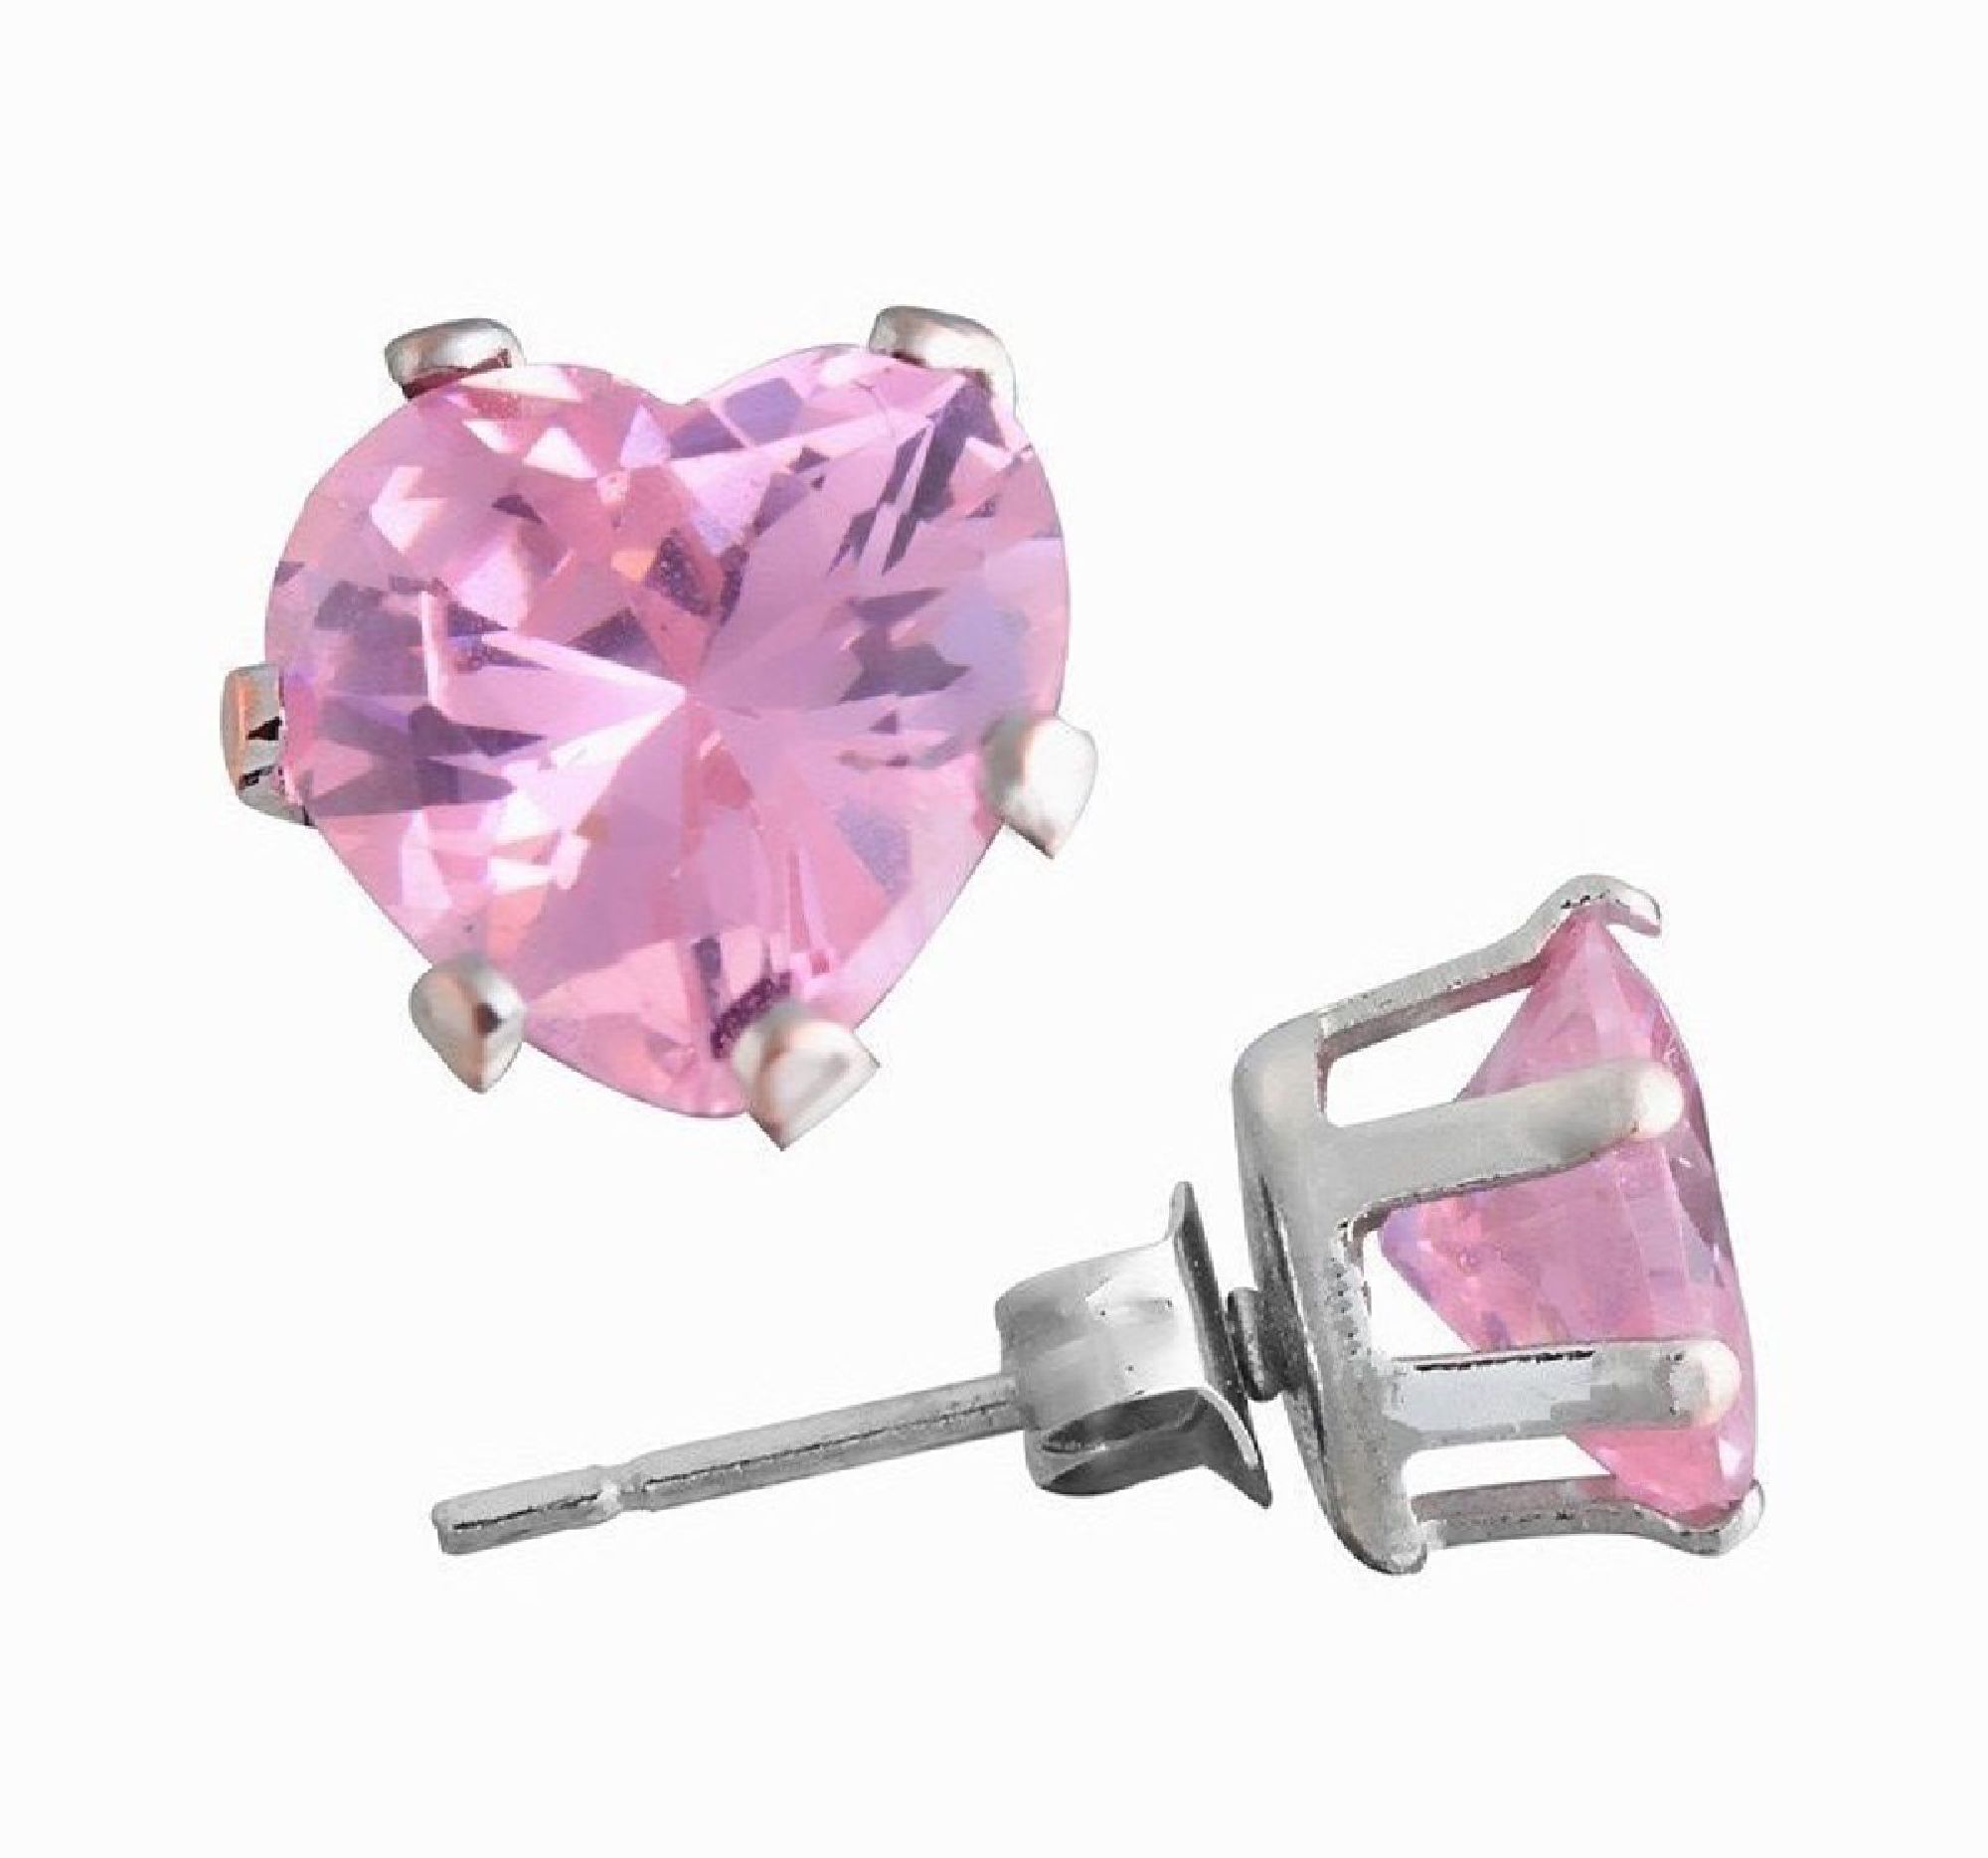 ParisJewelry.com 6 Carat Heart Shape Pink Diamond manmade Stud Earrings for Men in Sterling Silver Designed in France